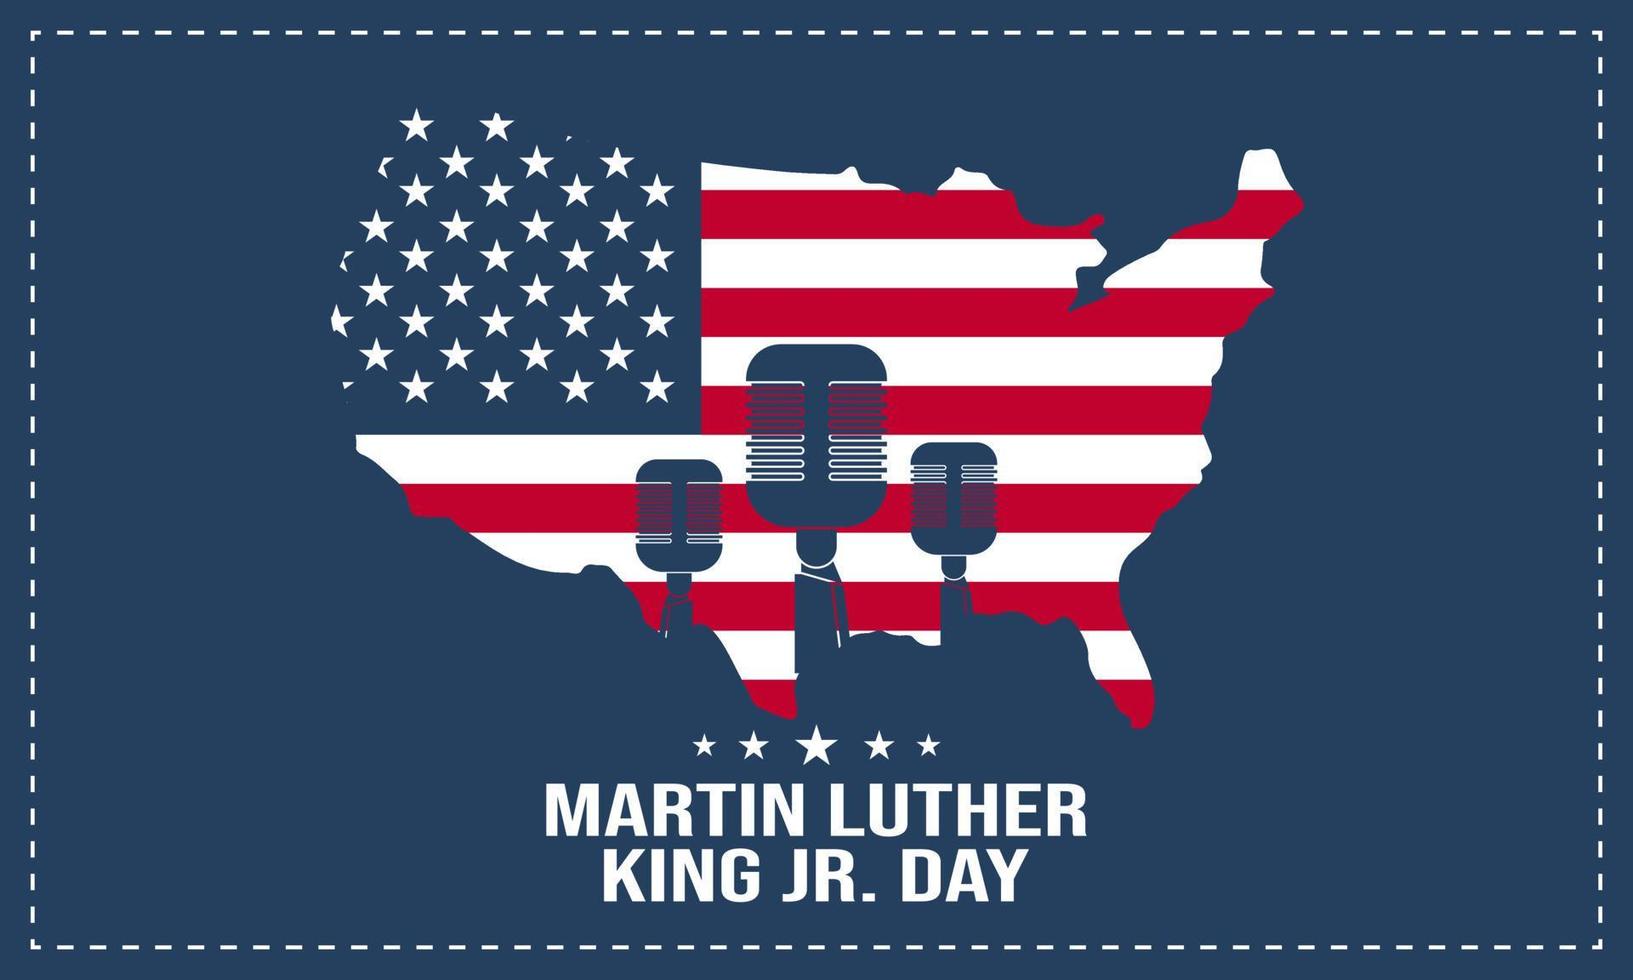 Martin Luther King jr. Tag Hintergrund. Vektor-Illustration. vektor